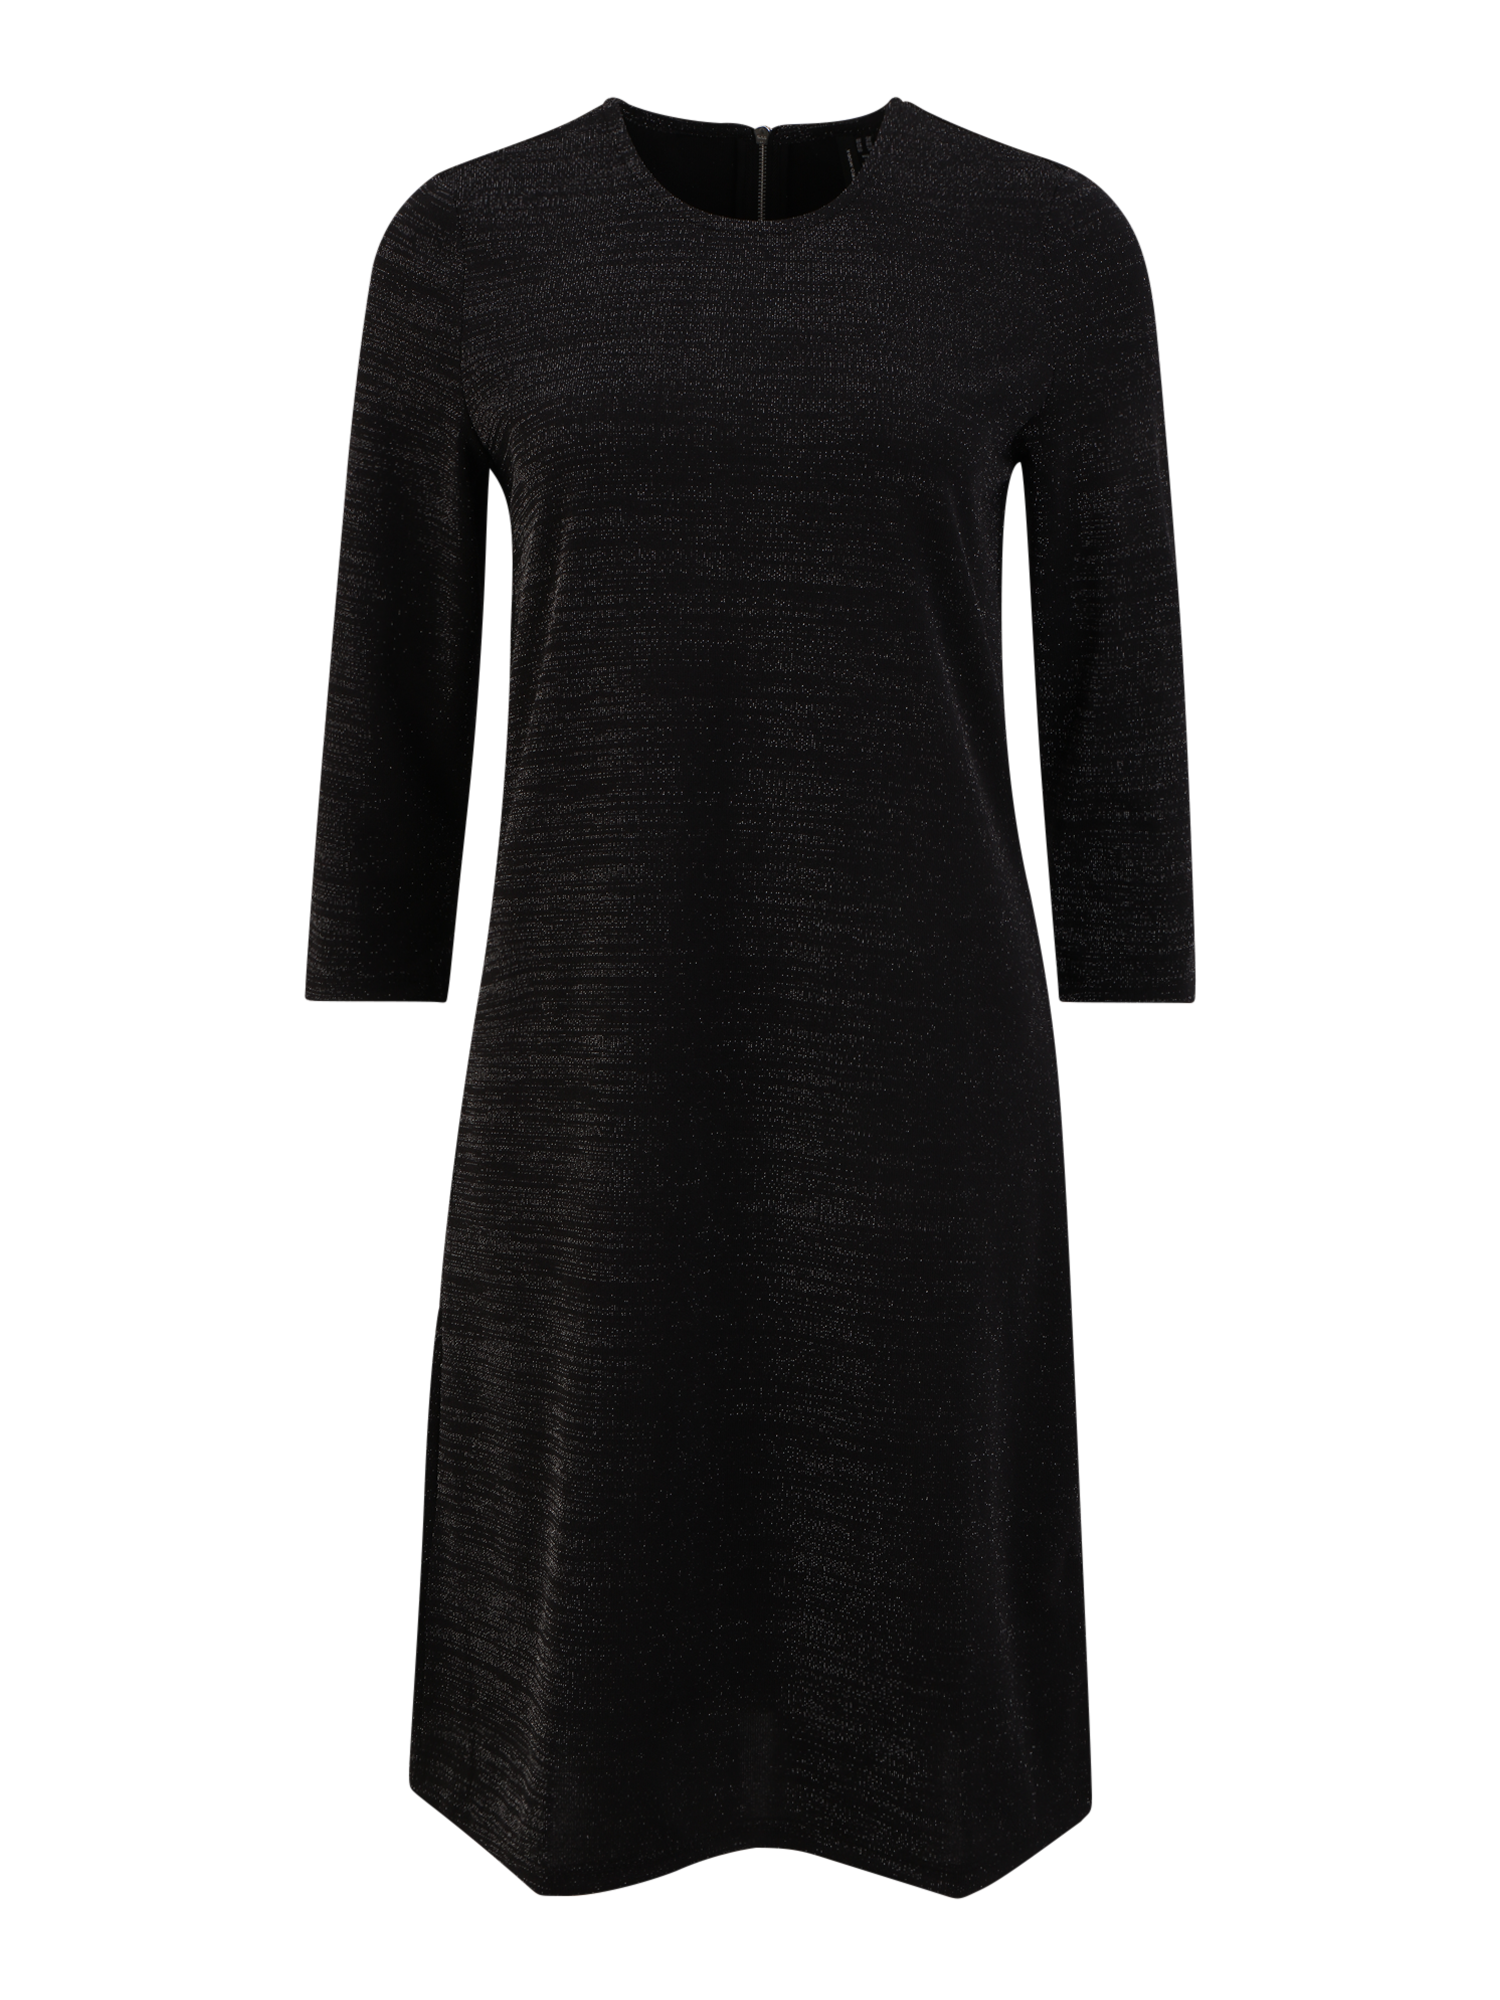 Odzież Vb1Fa Vero Moda Tall Sukienka CHRIS w kolorze Czarnym 